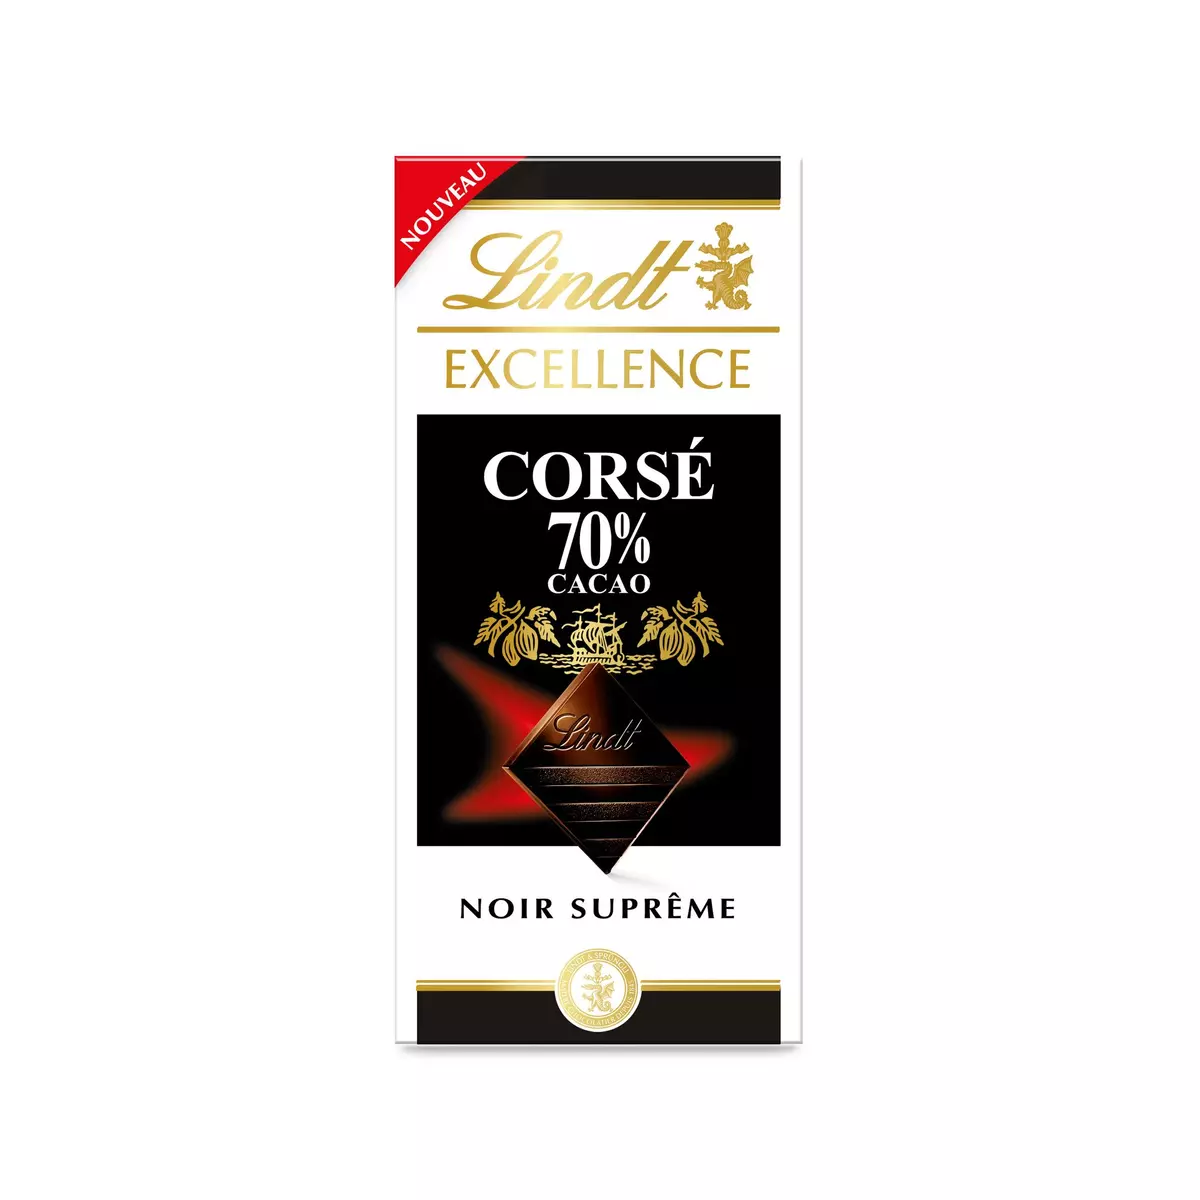 LINDT Excellence tablette de chocolat noir suprême corsé 70% cacao 1 pièce 100g